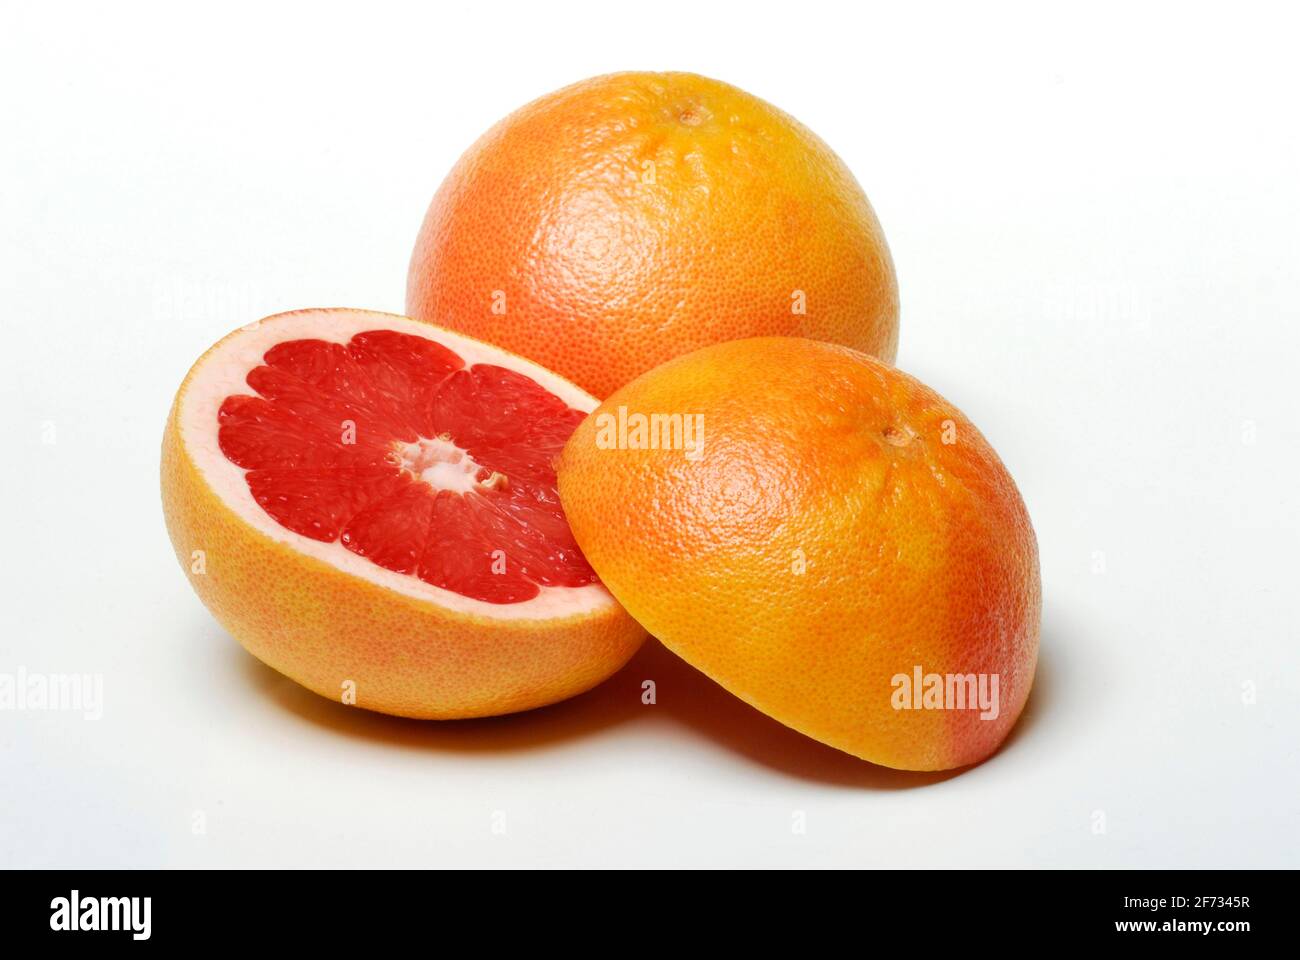 Grapefruit ( Citrus maxima, Citrus x paradisi) Stock Photo